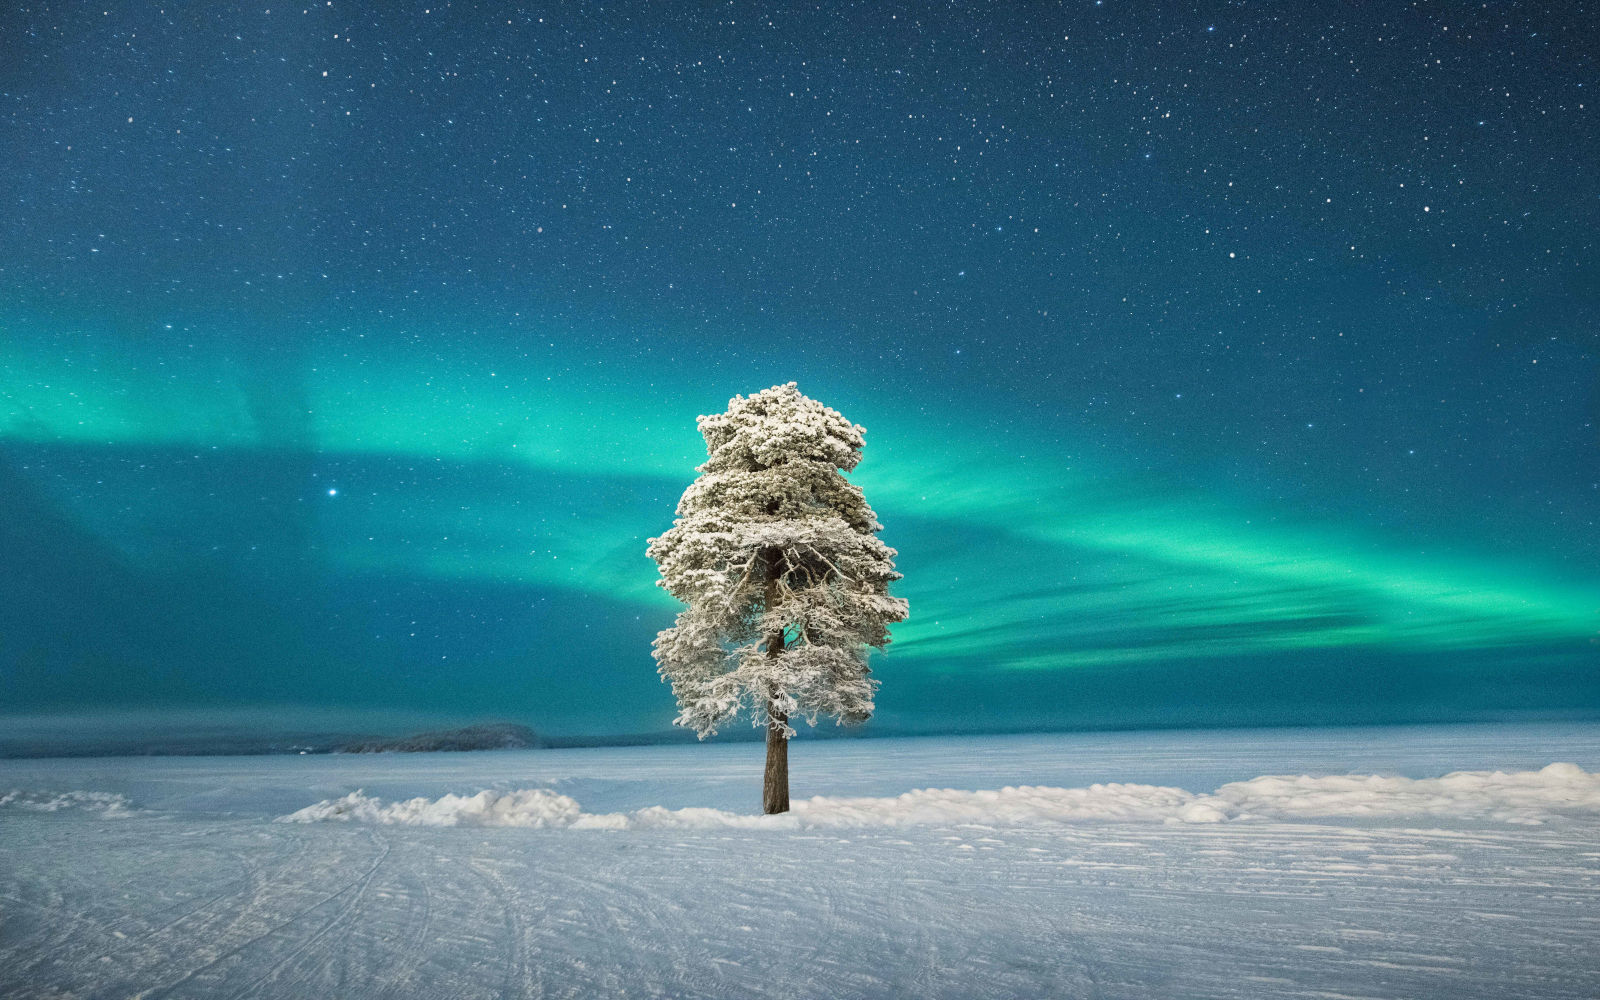 finlande laponie hiver aurores boreales lac gele arbre enneige voyage o-nord